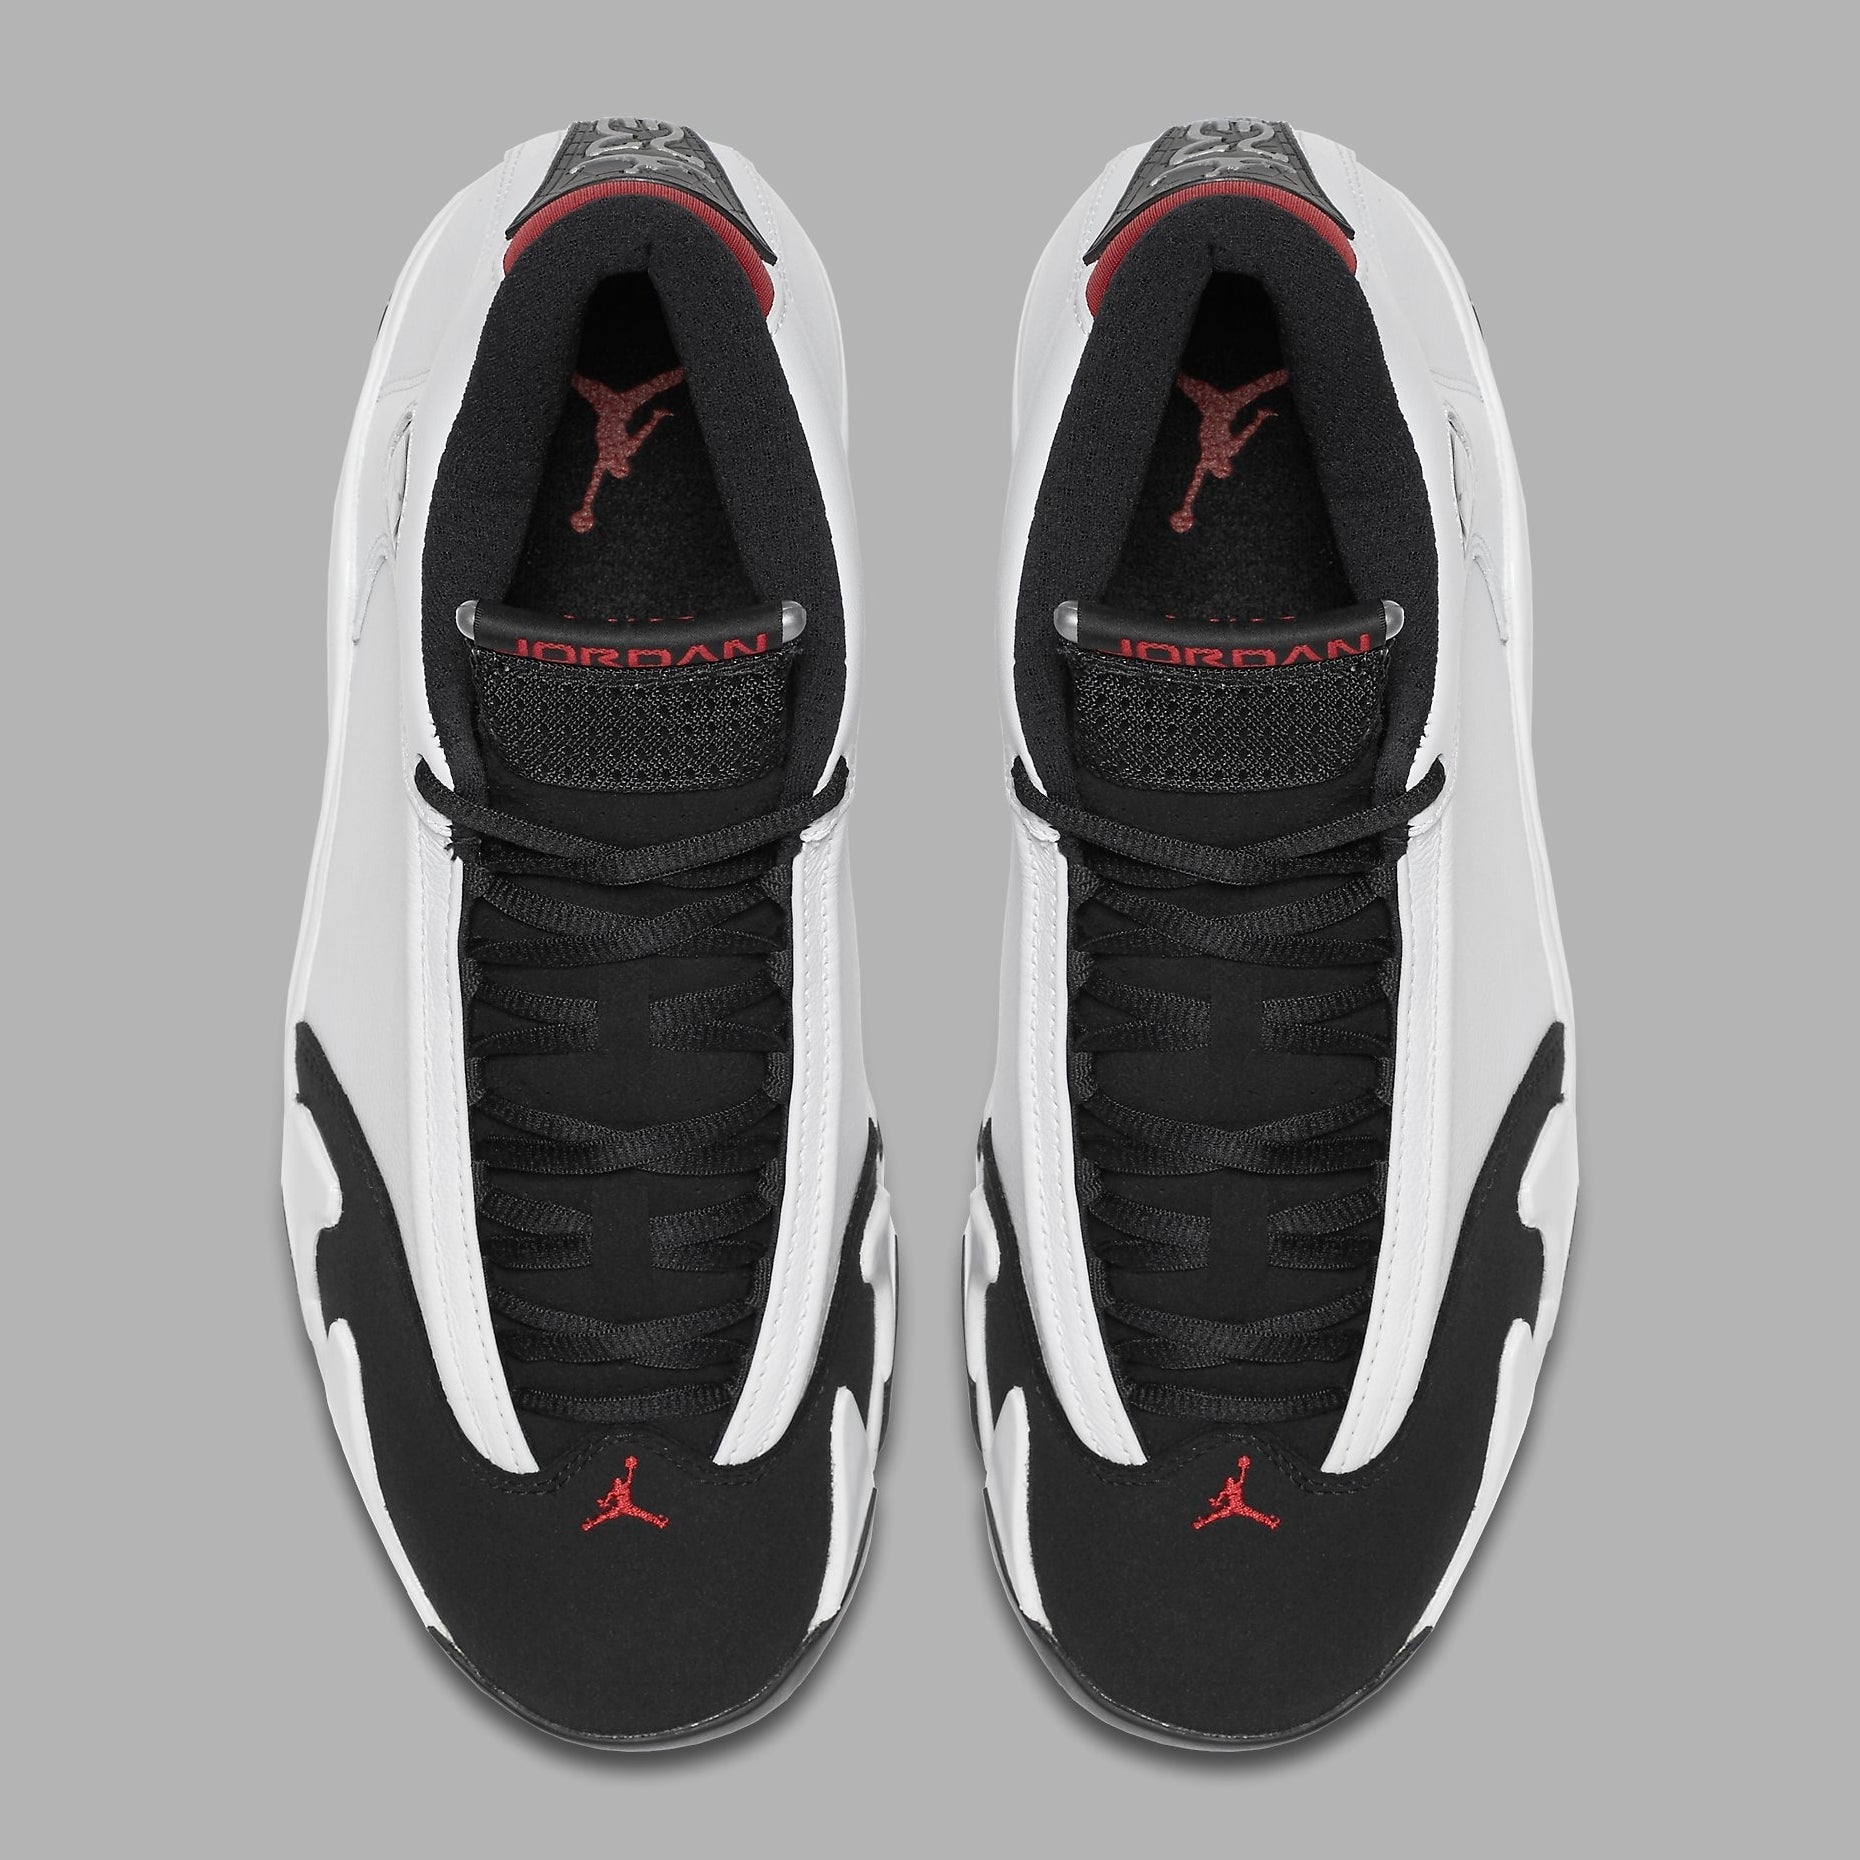 Air Jordan 14 XIV Black Toe Release Date Top